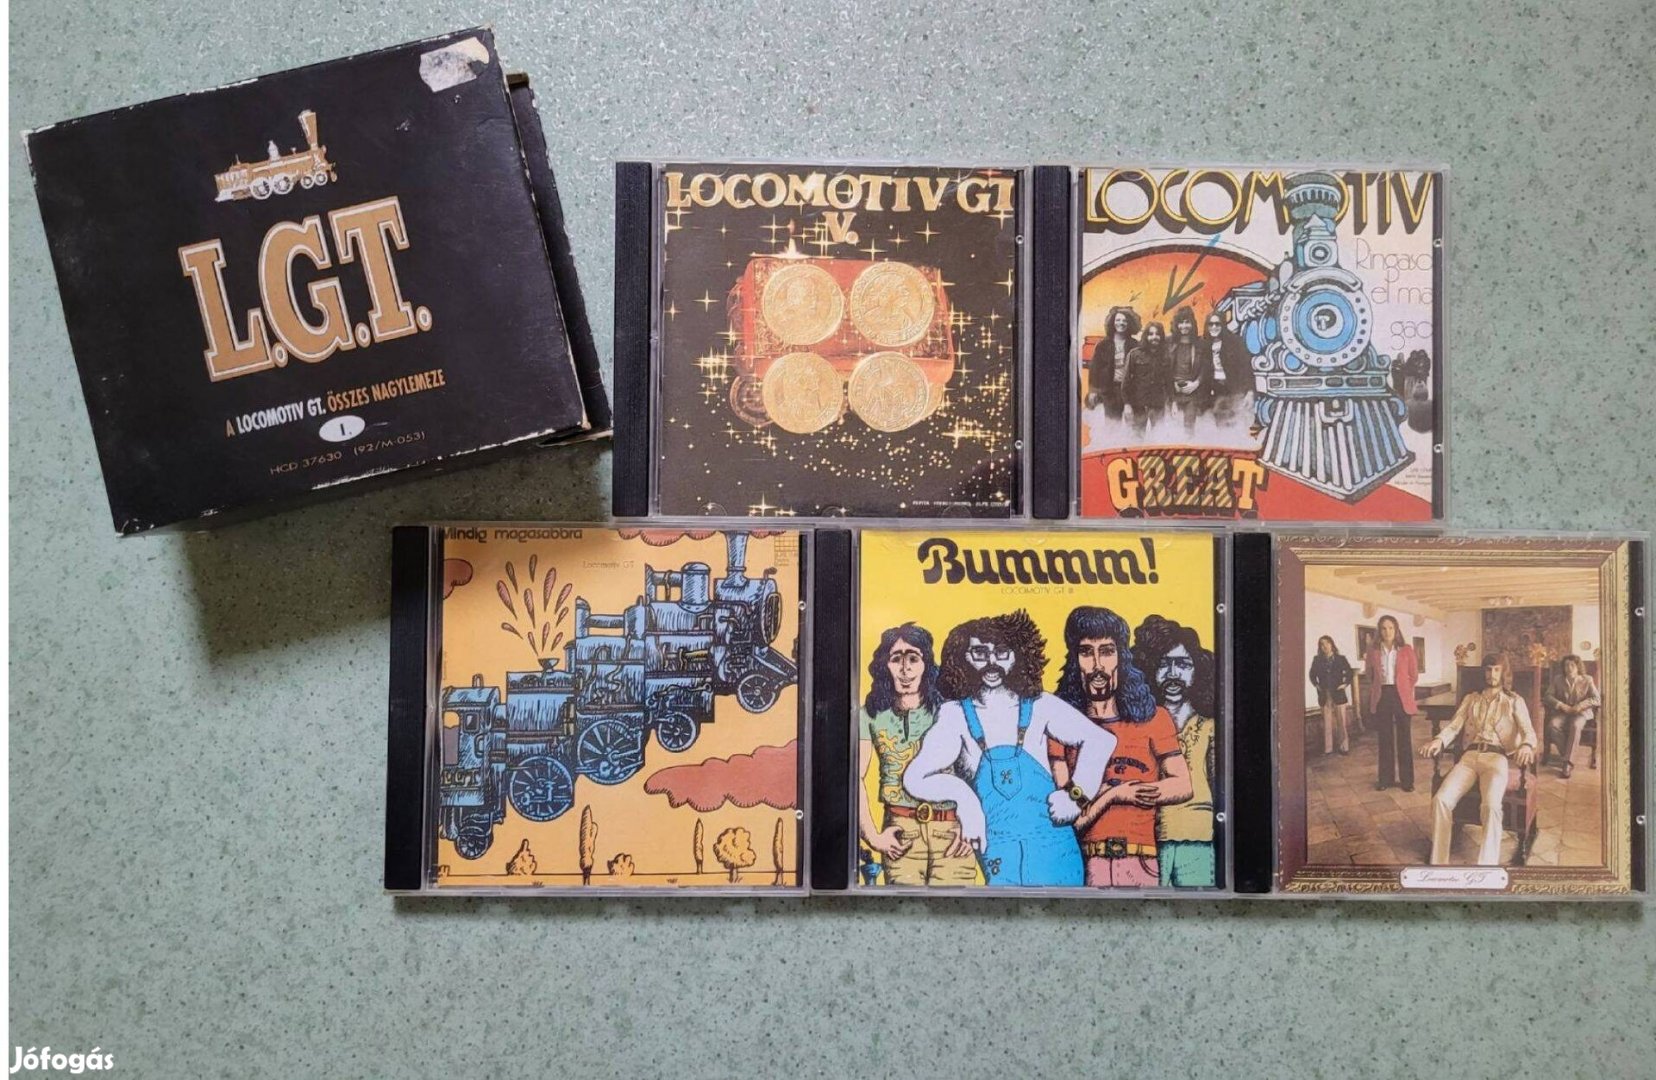 L.G.T. A Lokomotív GT. összes nagylemeze I. (Hungaroton Gong, 5CD)